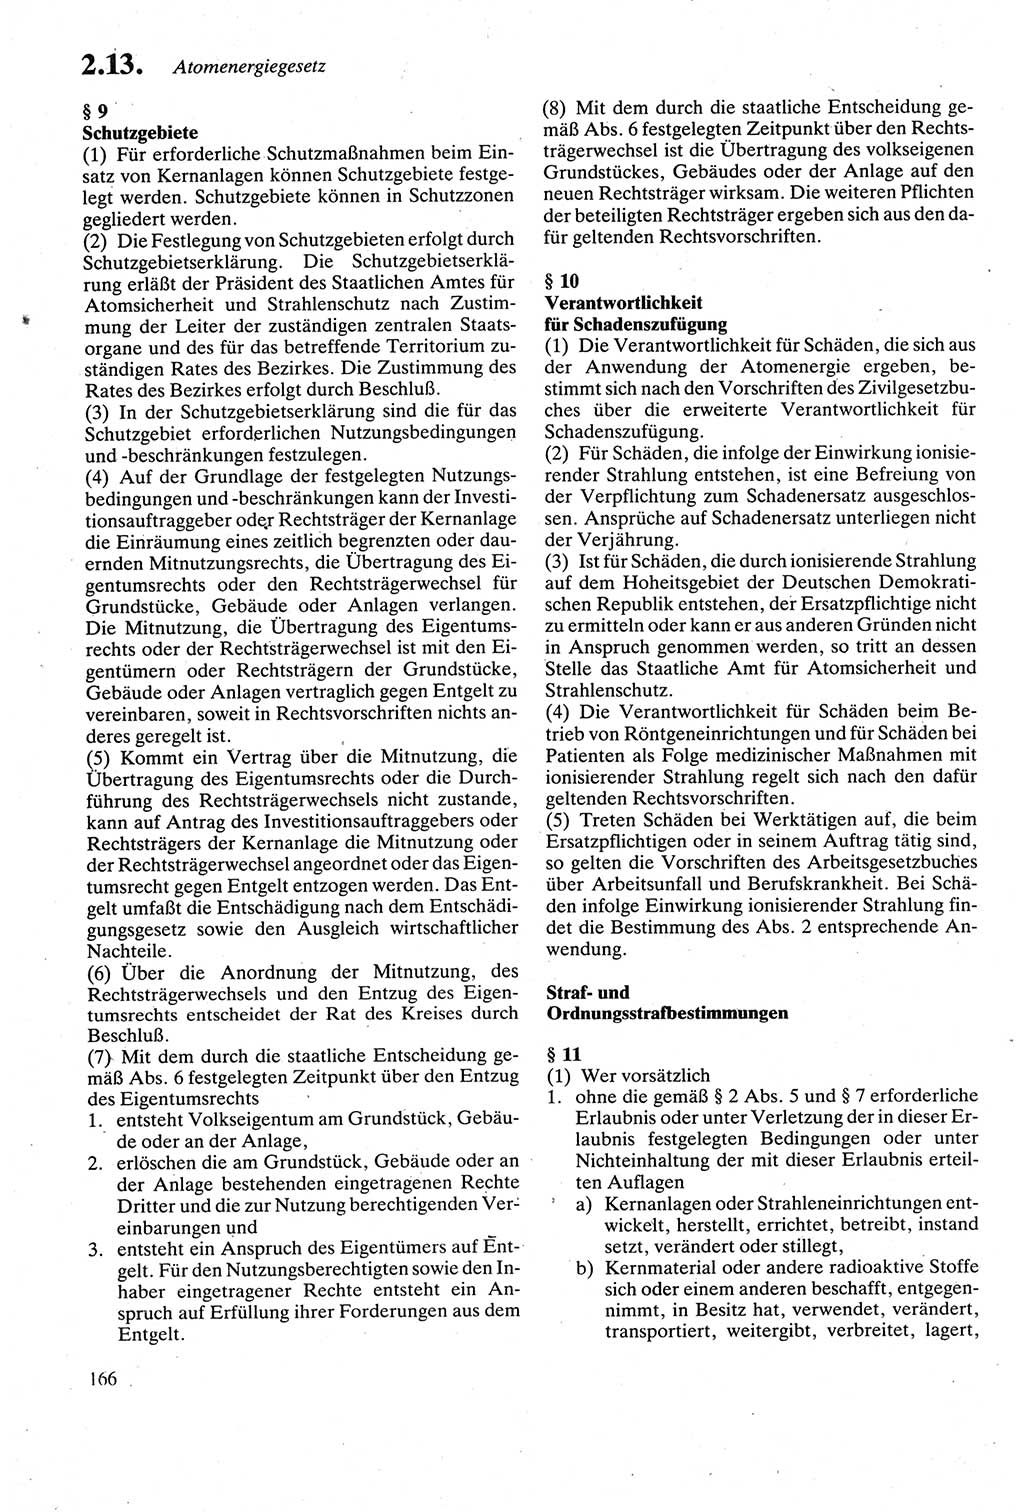 Strafgesetzbuch (StGB) der Deutschen Demokratischen Republik (DDR) sowie angrenzende Gesetze und Bestimmungen 1979, Seite 166 (StGB DDR Ges. Best. 1979, S. 166)